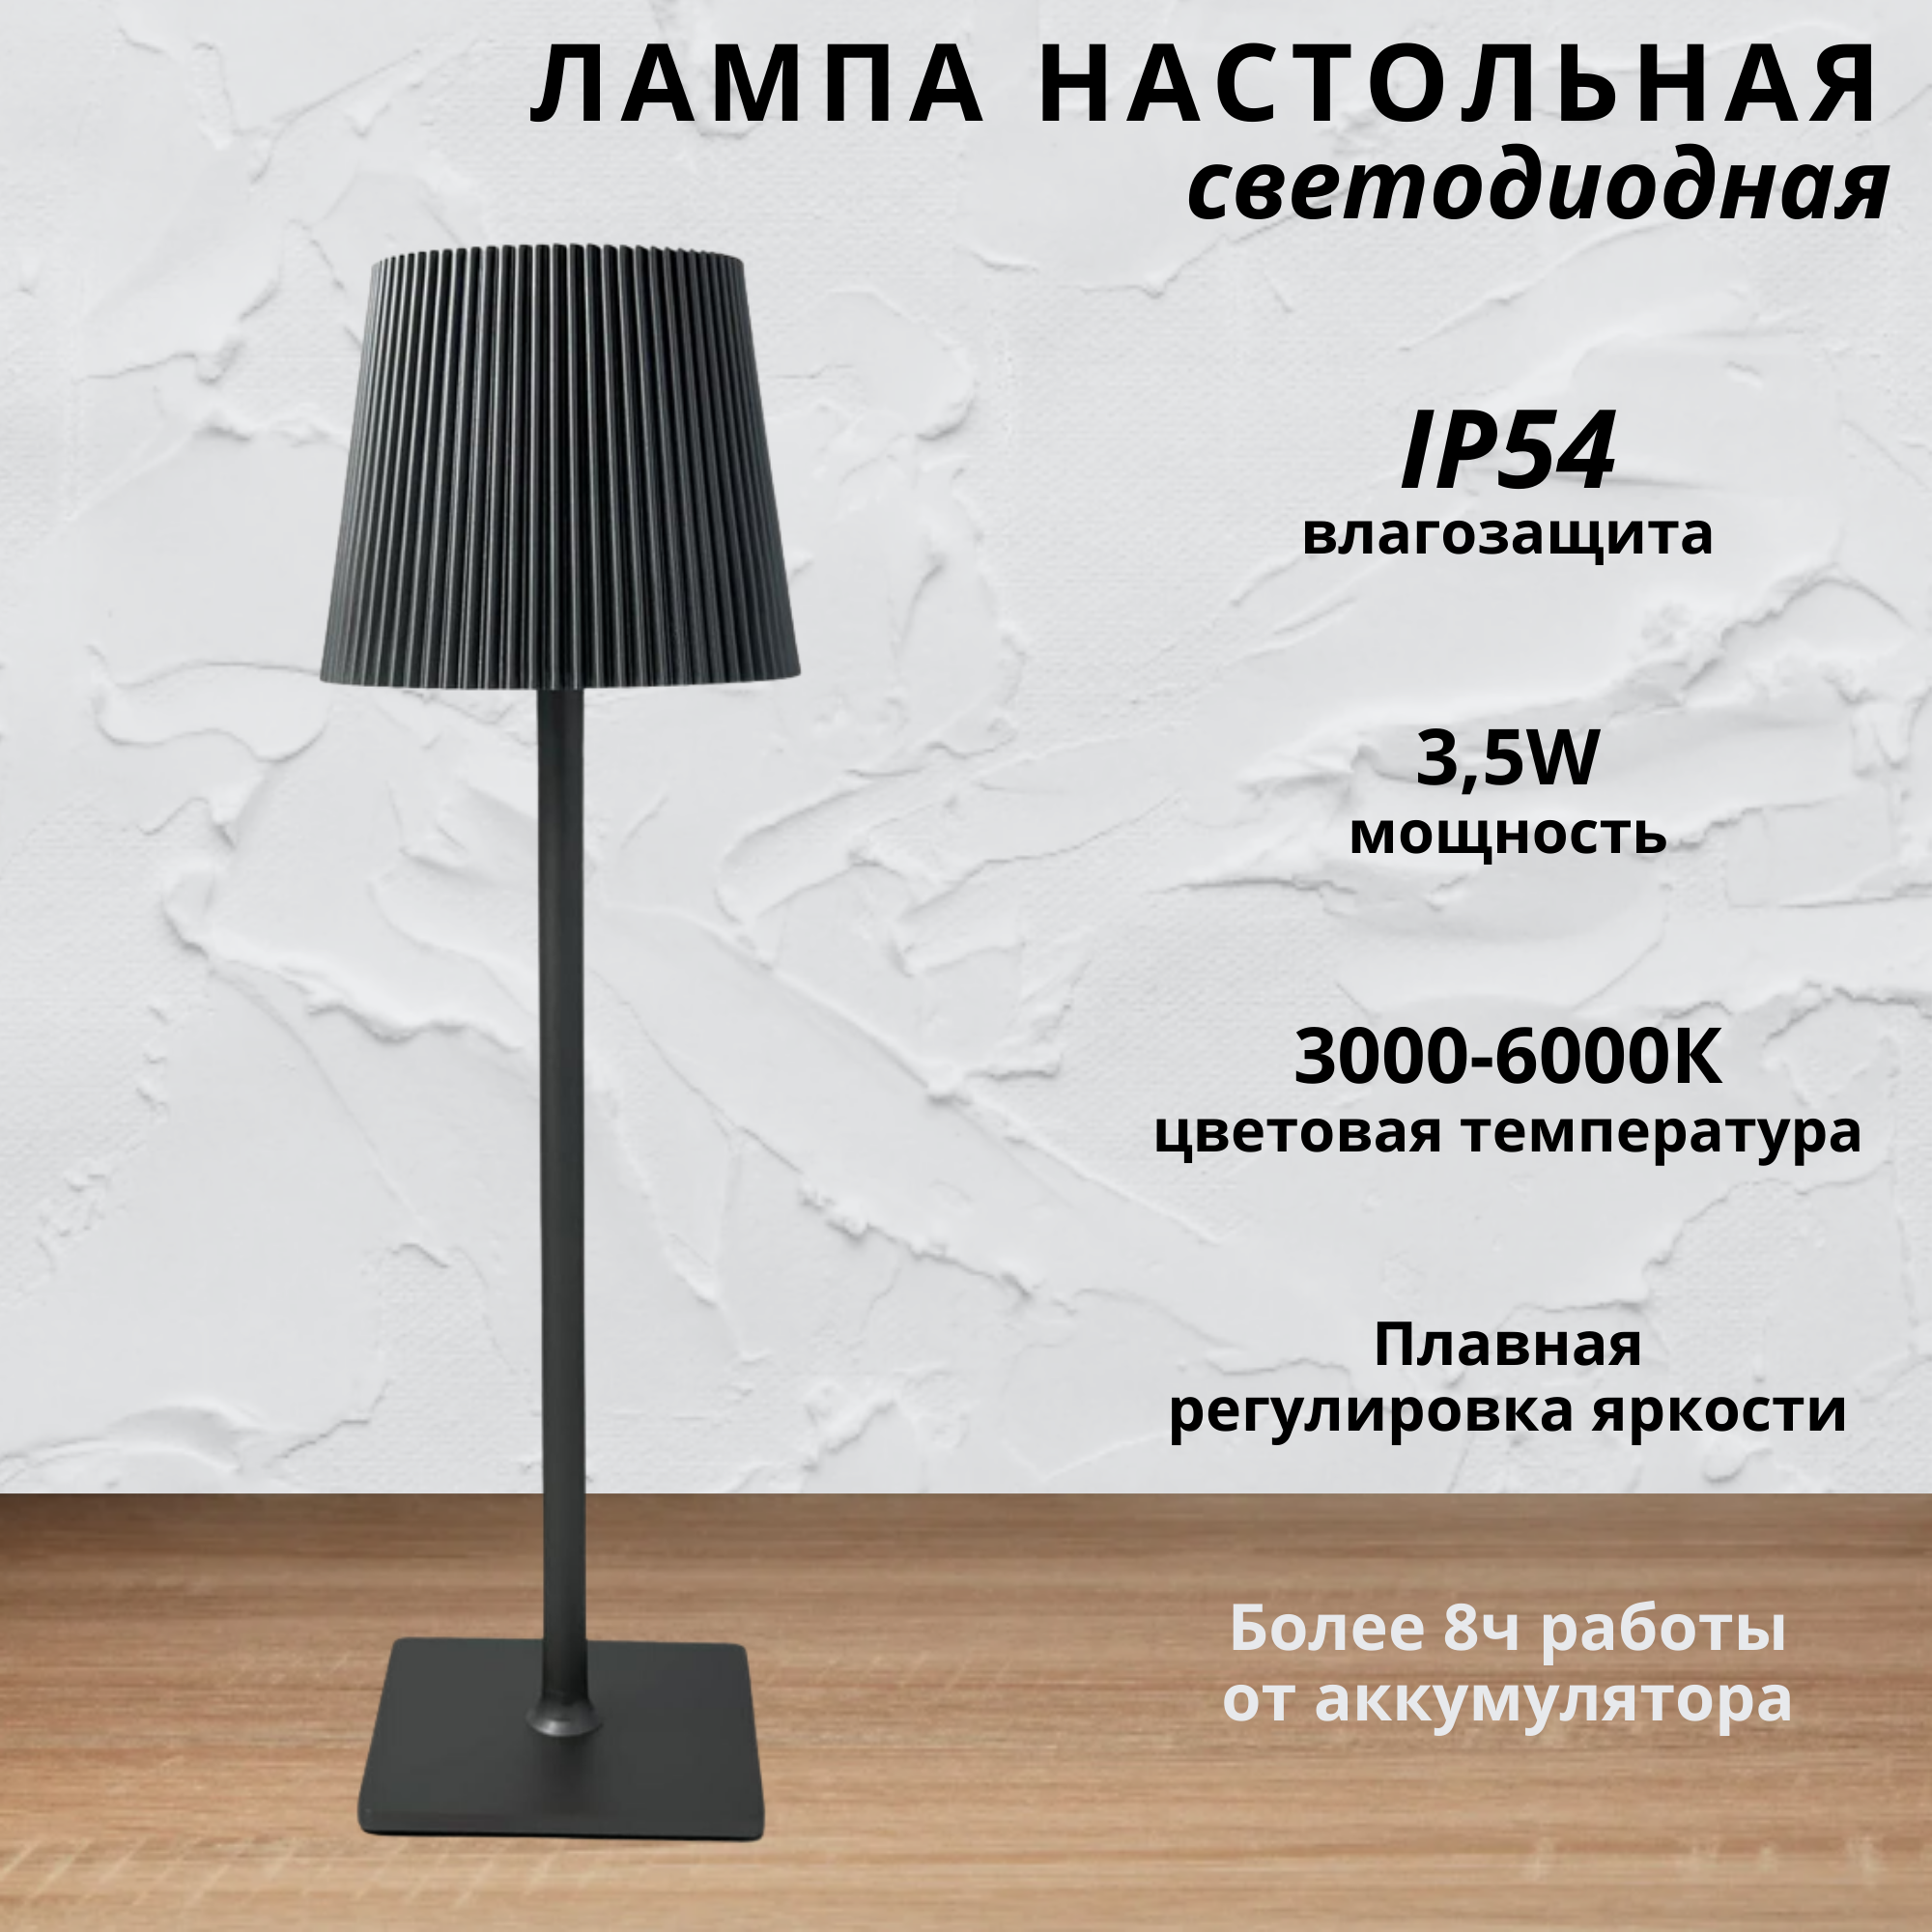 FEDOTOV Беспроводная черная настольная лампа с рефленым абажуром